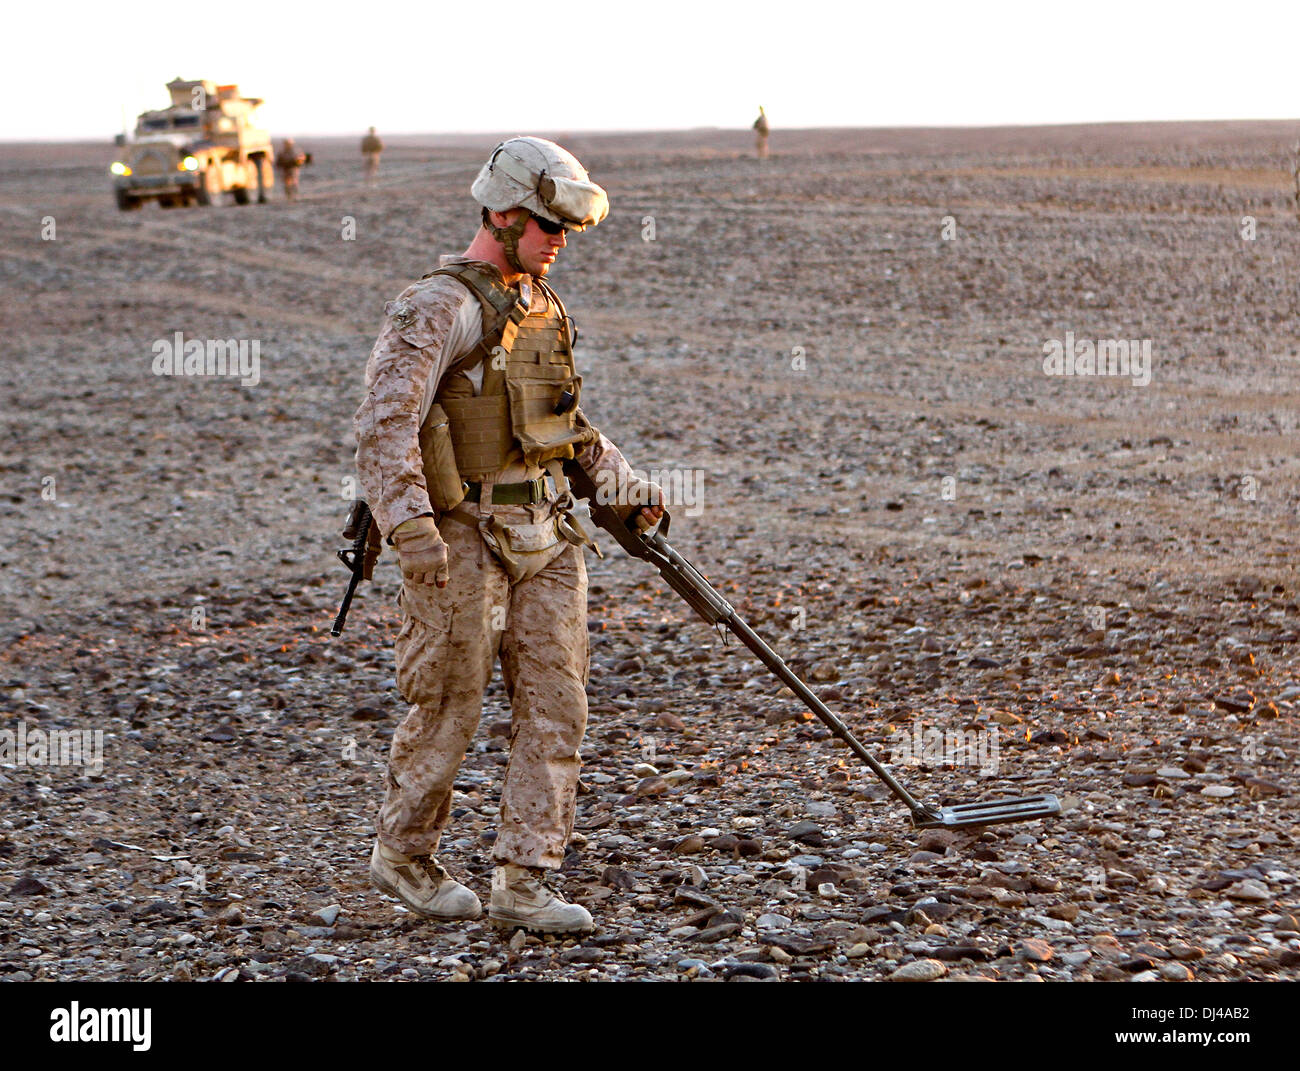 Ein US-Marine fegt für improvisierte explosive Vorrichtungen mit einem Metalldetektor auf einer Landezone während der Operation Pegasus II 10. November 2013 in der Nähe von Spin Boldak, Afghanistan. Stockfoto